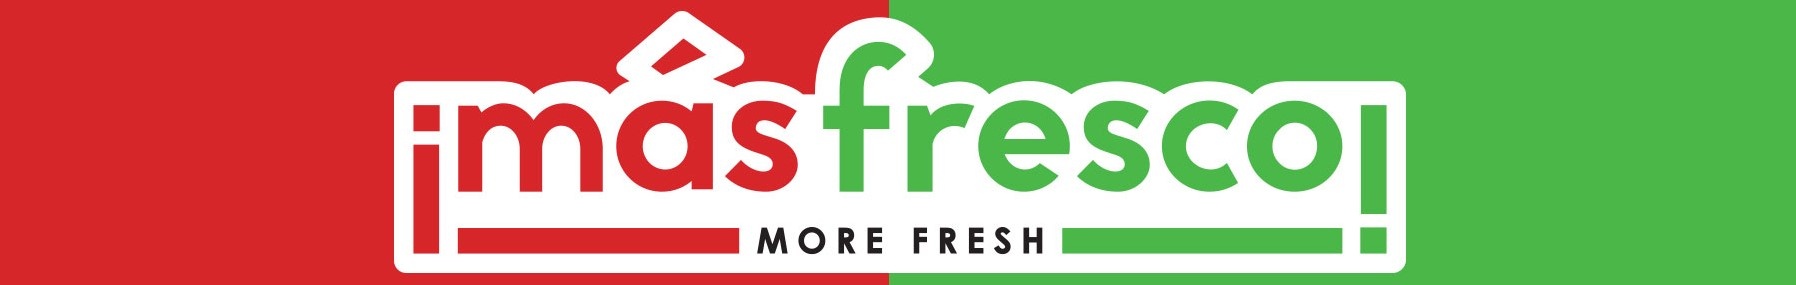 Image of Mas Fresco Program logo